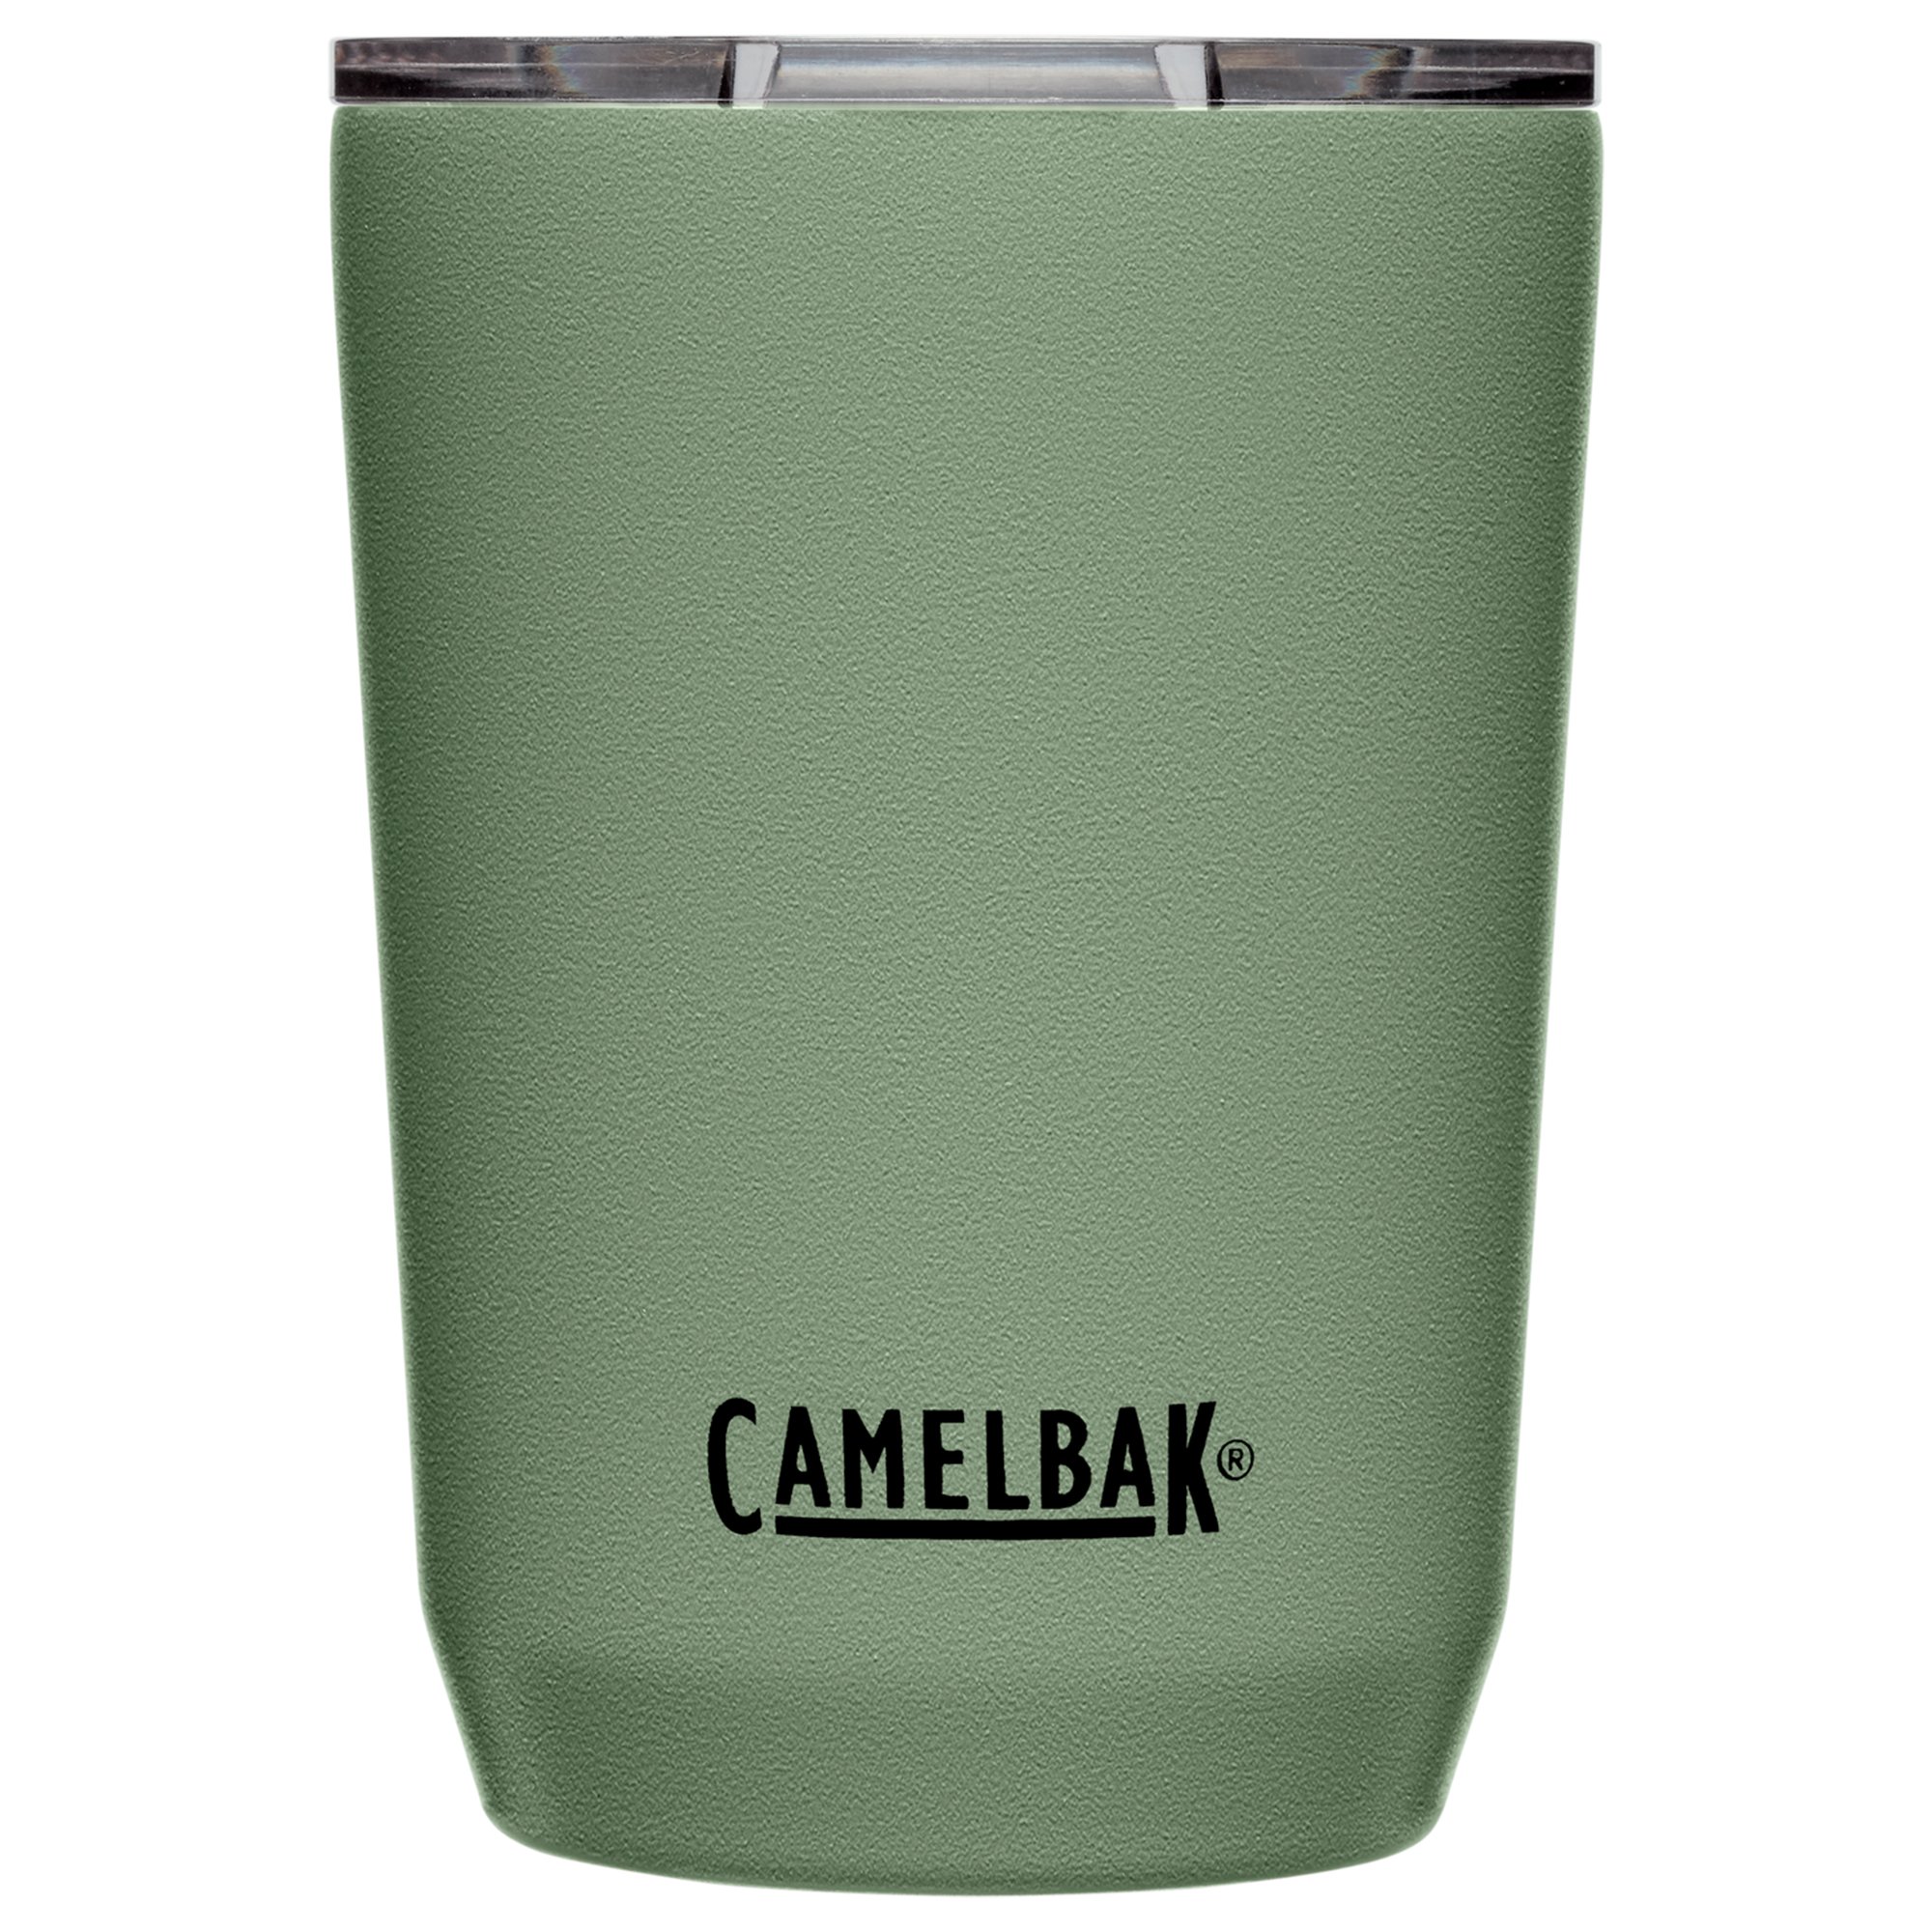 Camelbak Tumbler termokrus 0,35 liter, moss